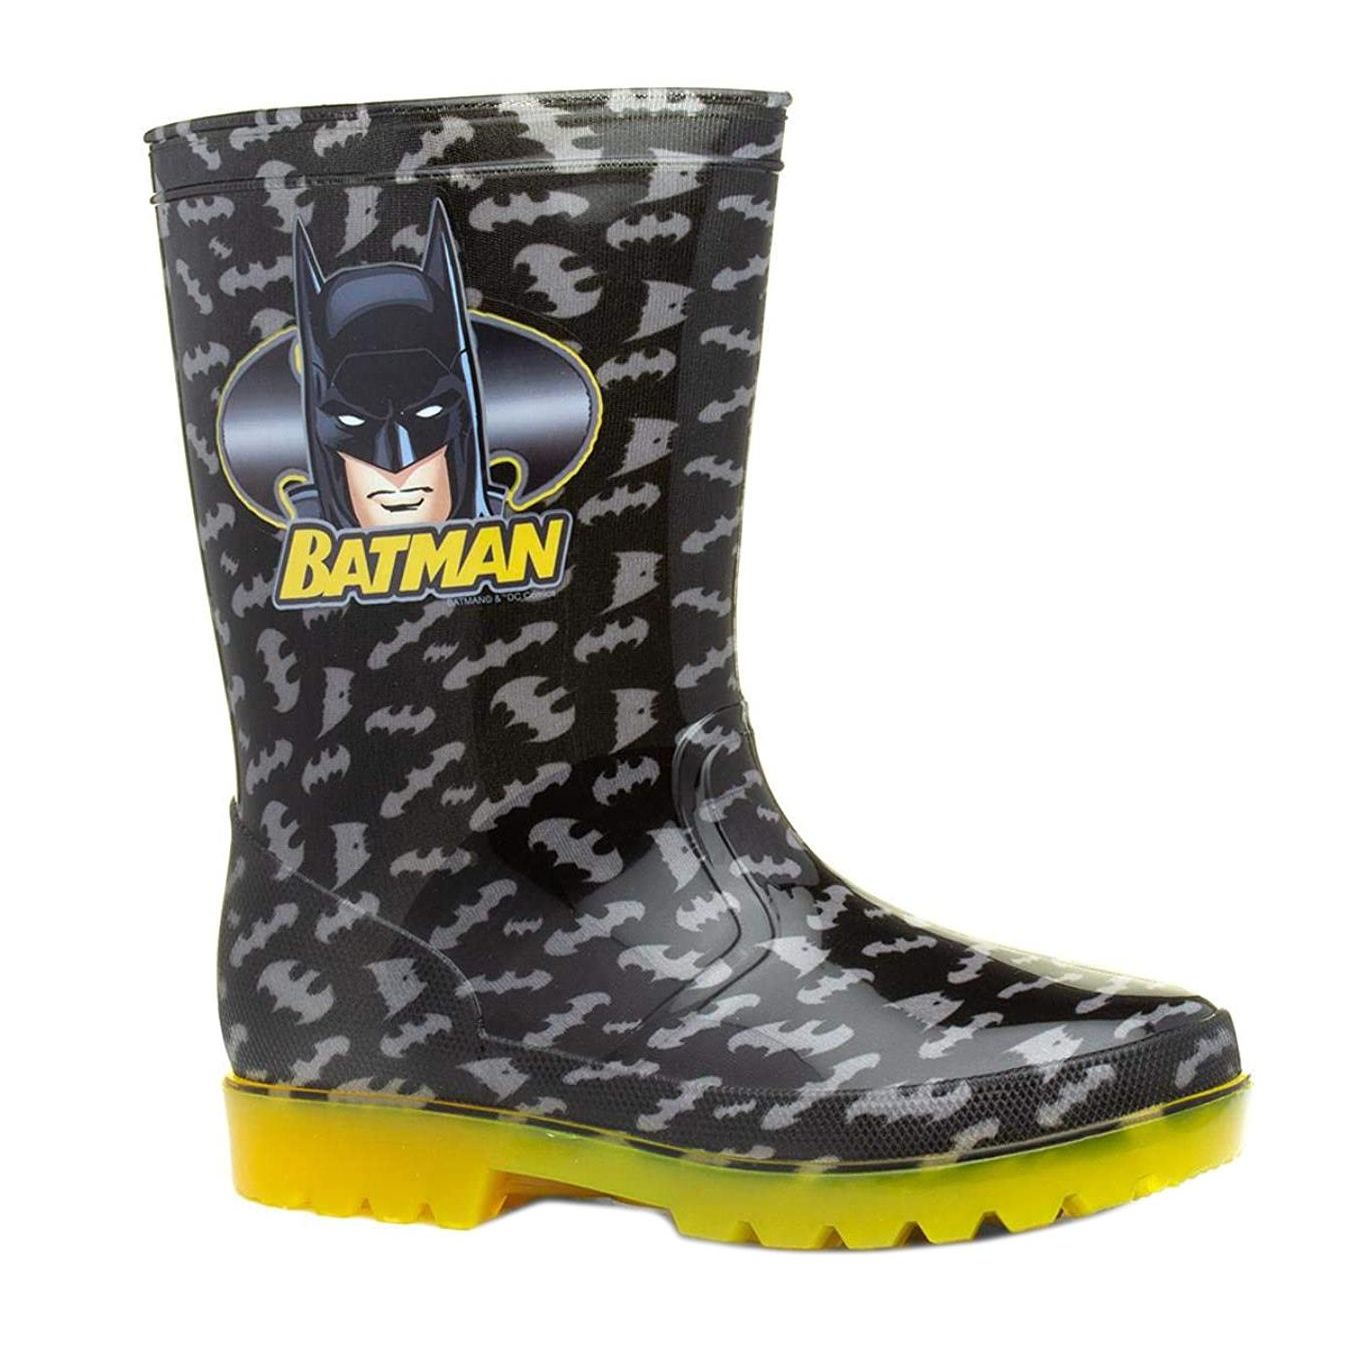 Childs Batman Wellington Boots